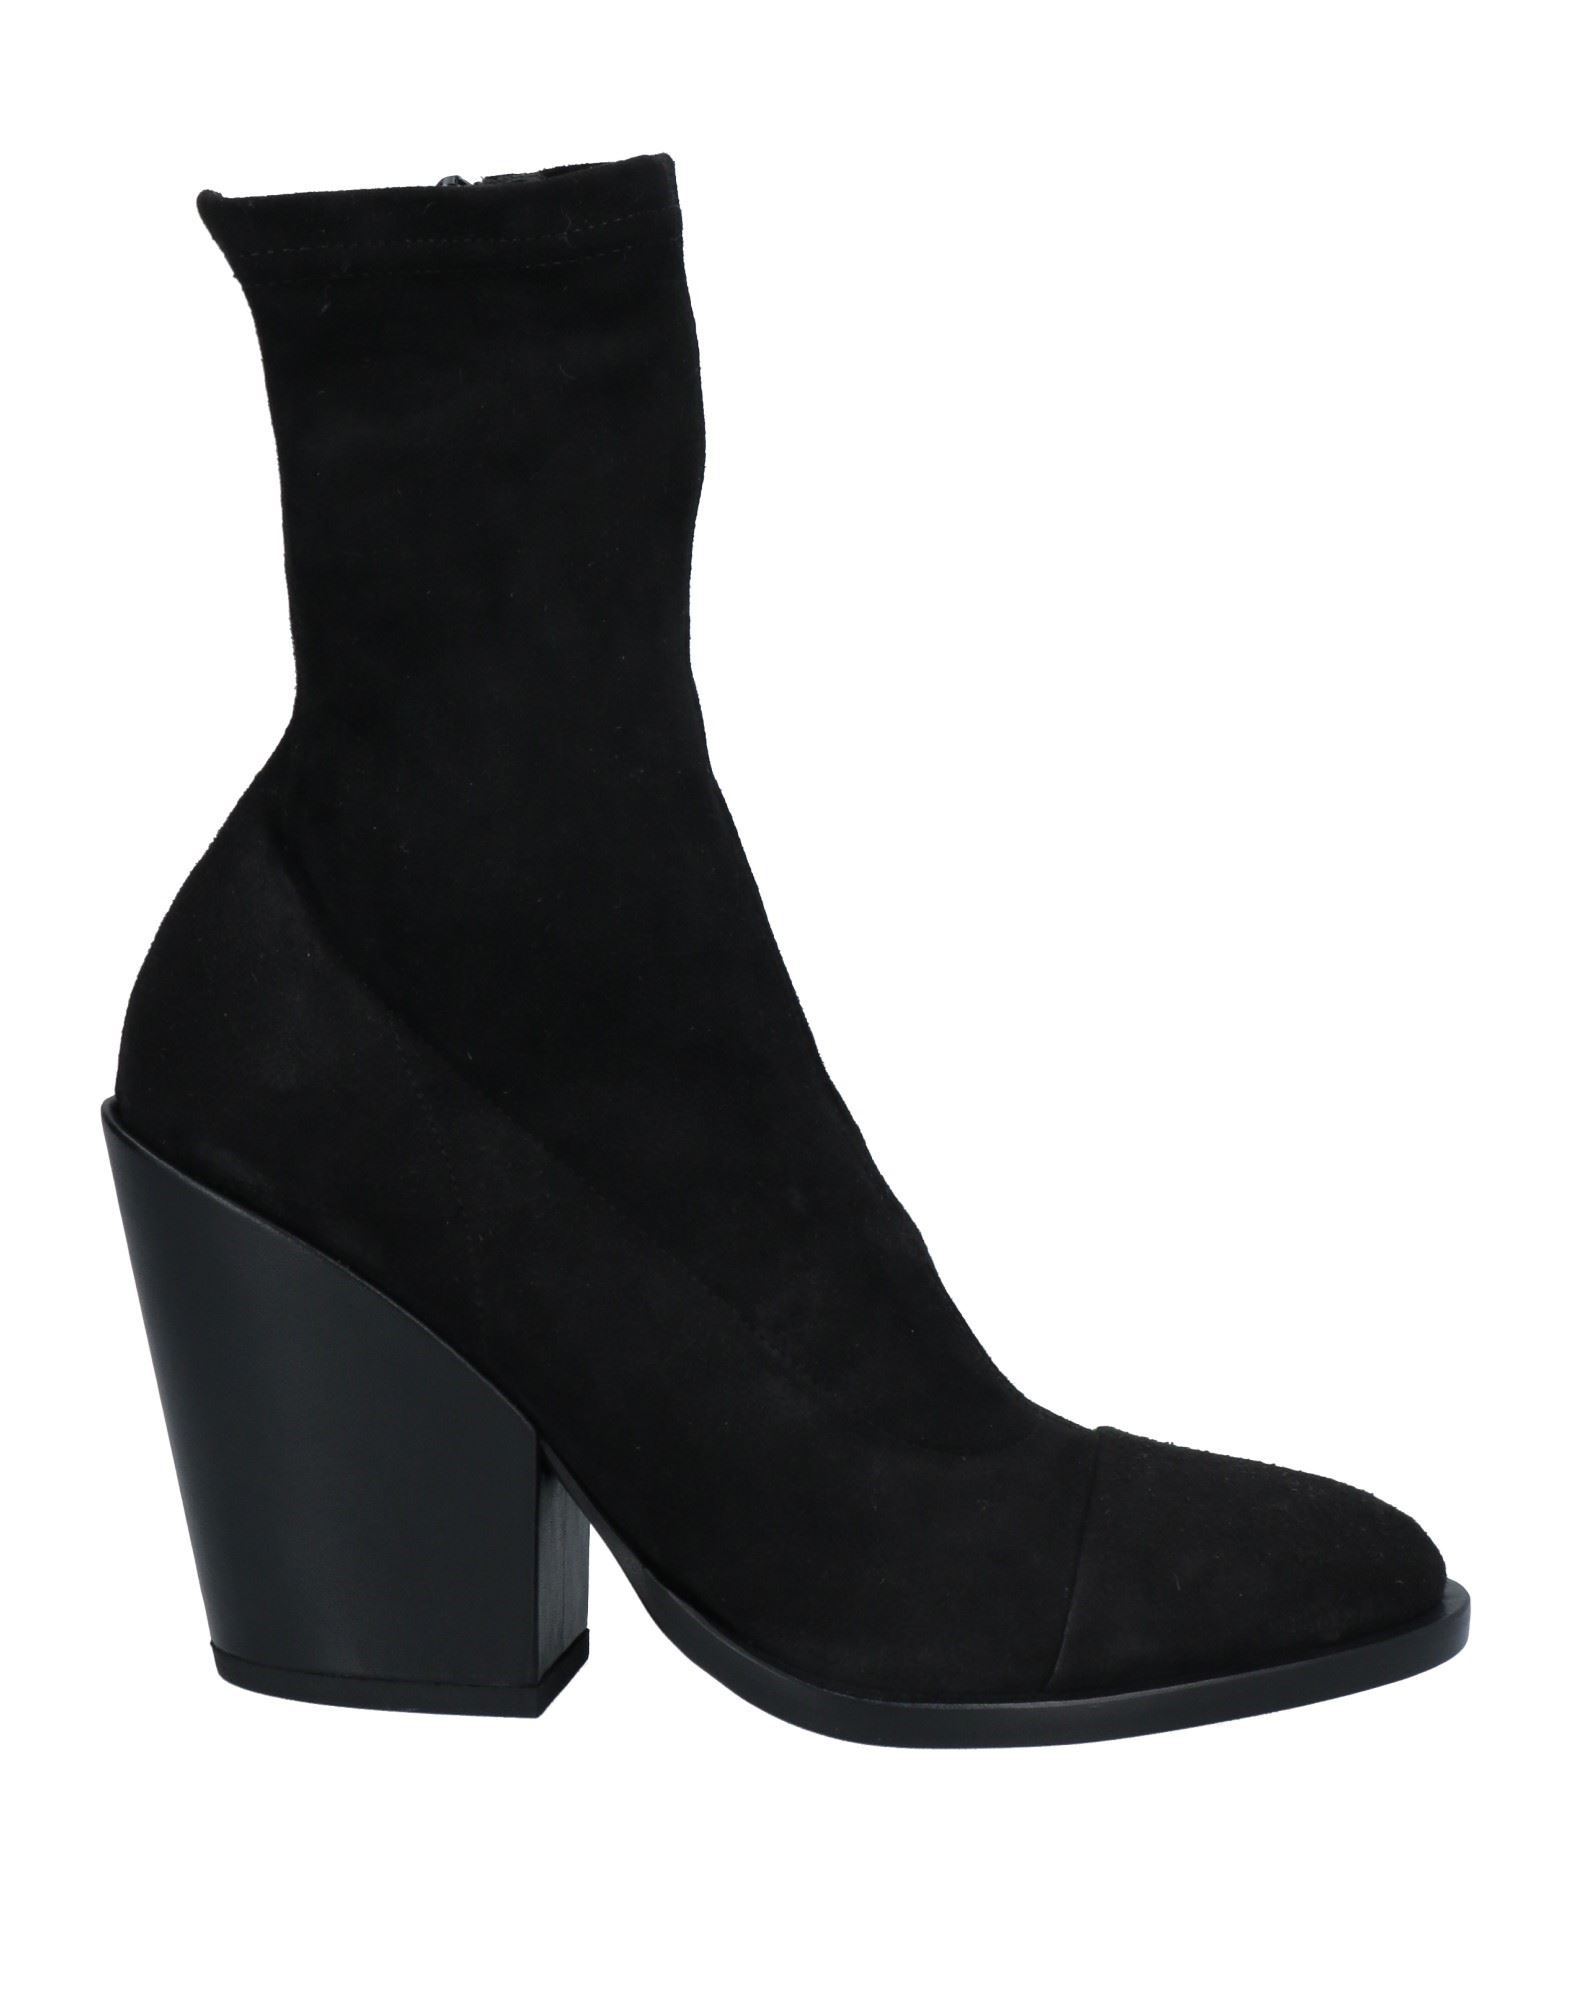 A.f.vandevorst Ankle Boots In Black